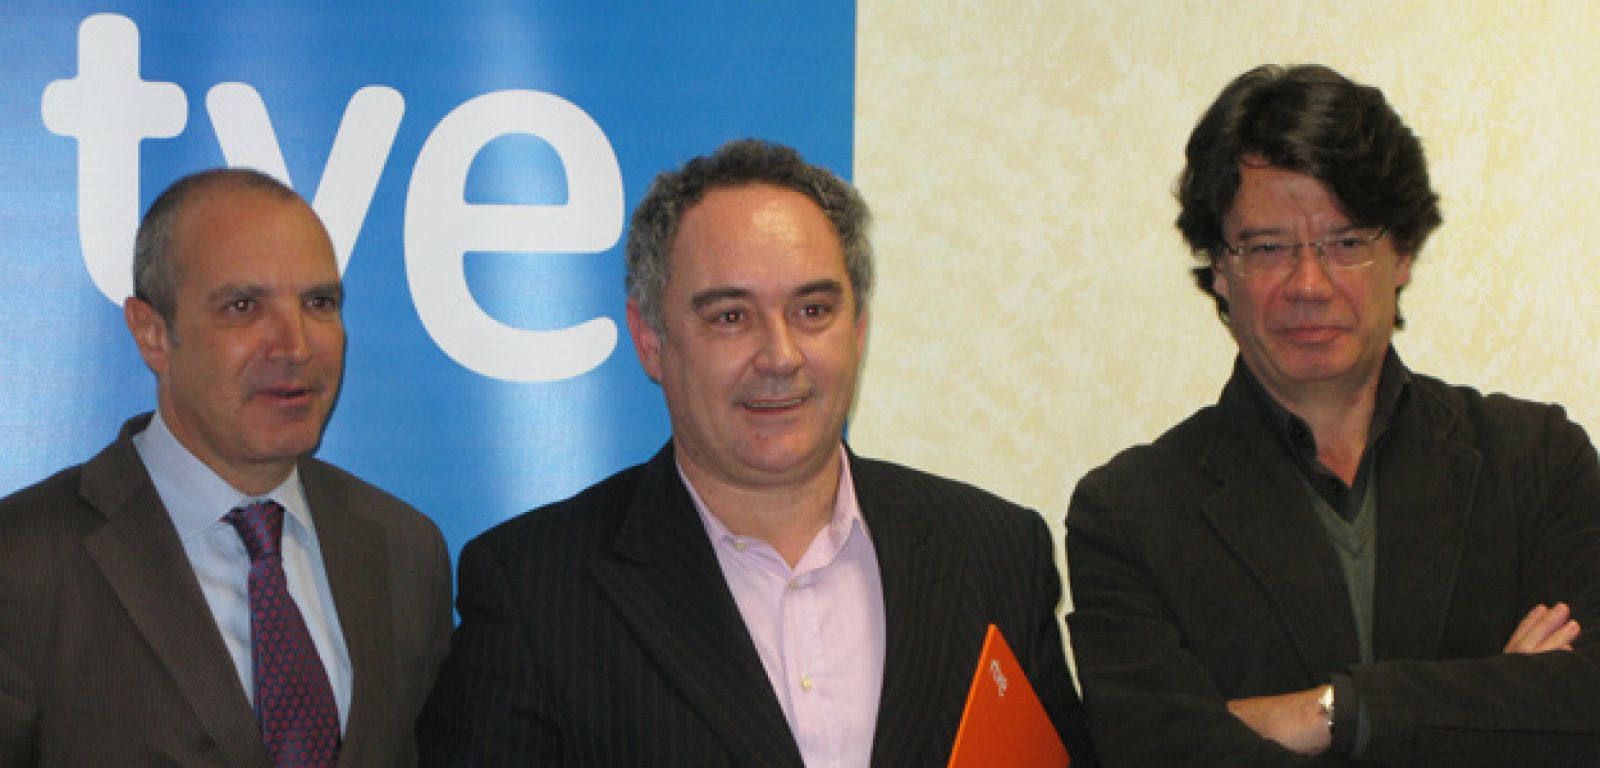 De izq. a dcha: Luis Fernández, presidente de la Corporación de RTVE, el cocinero Ferran Adrià, y Pere Roca, director del Canal Cultura.